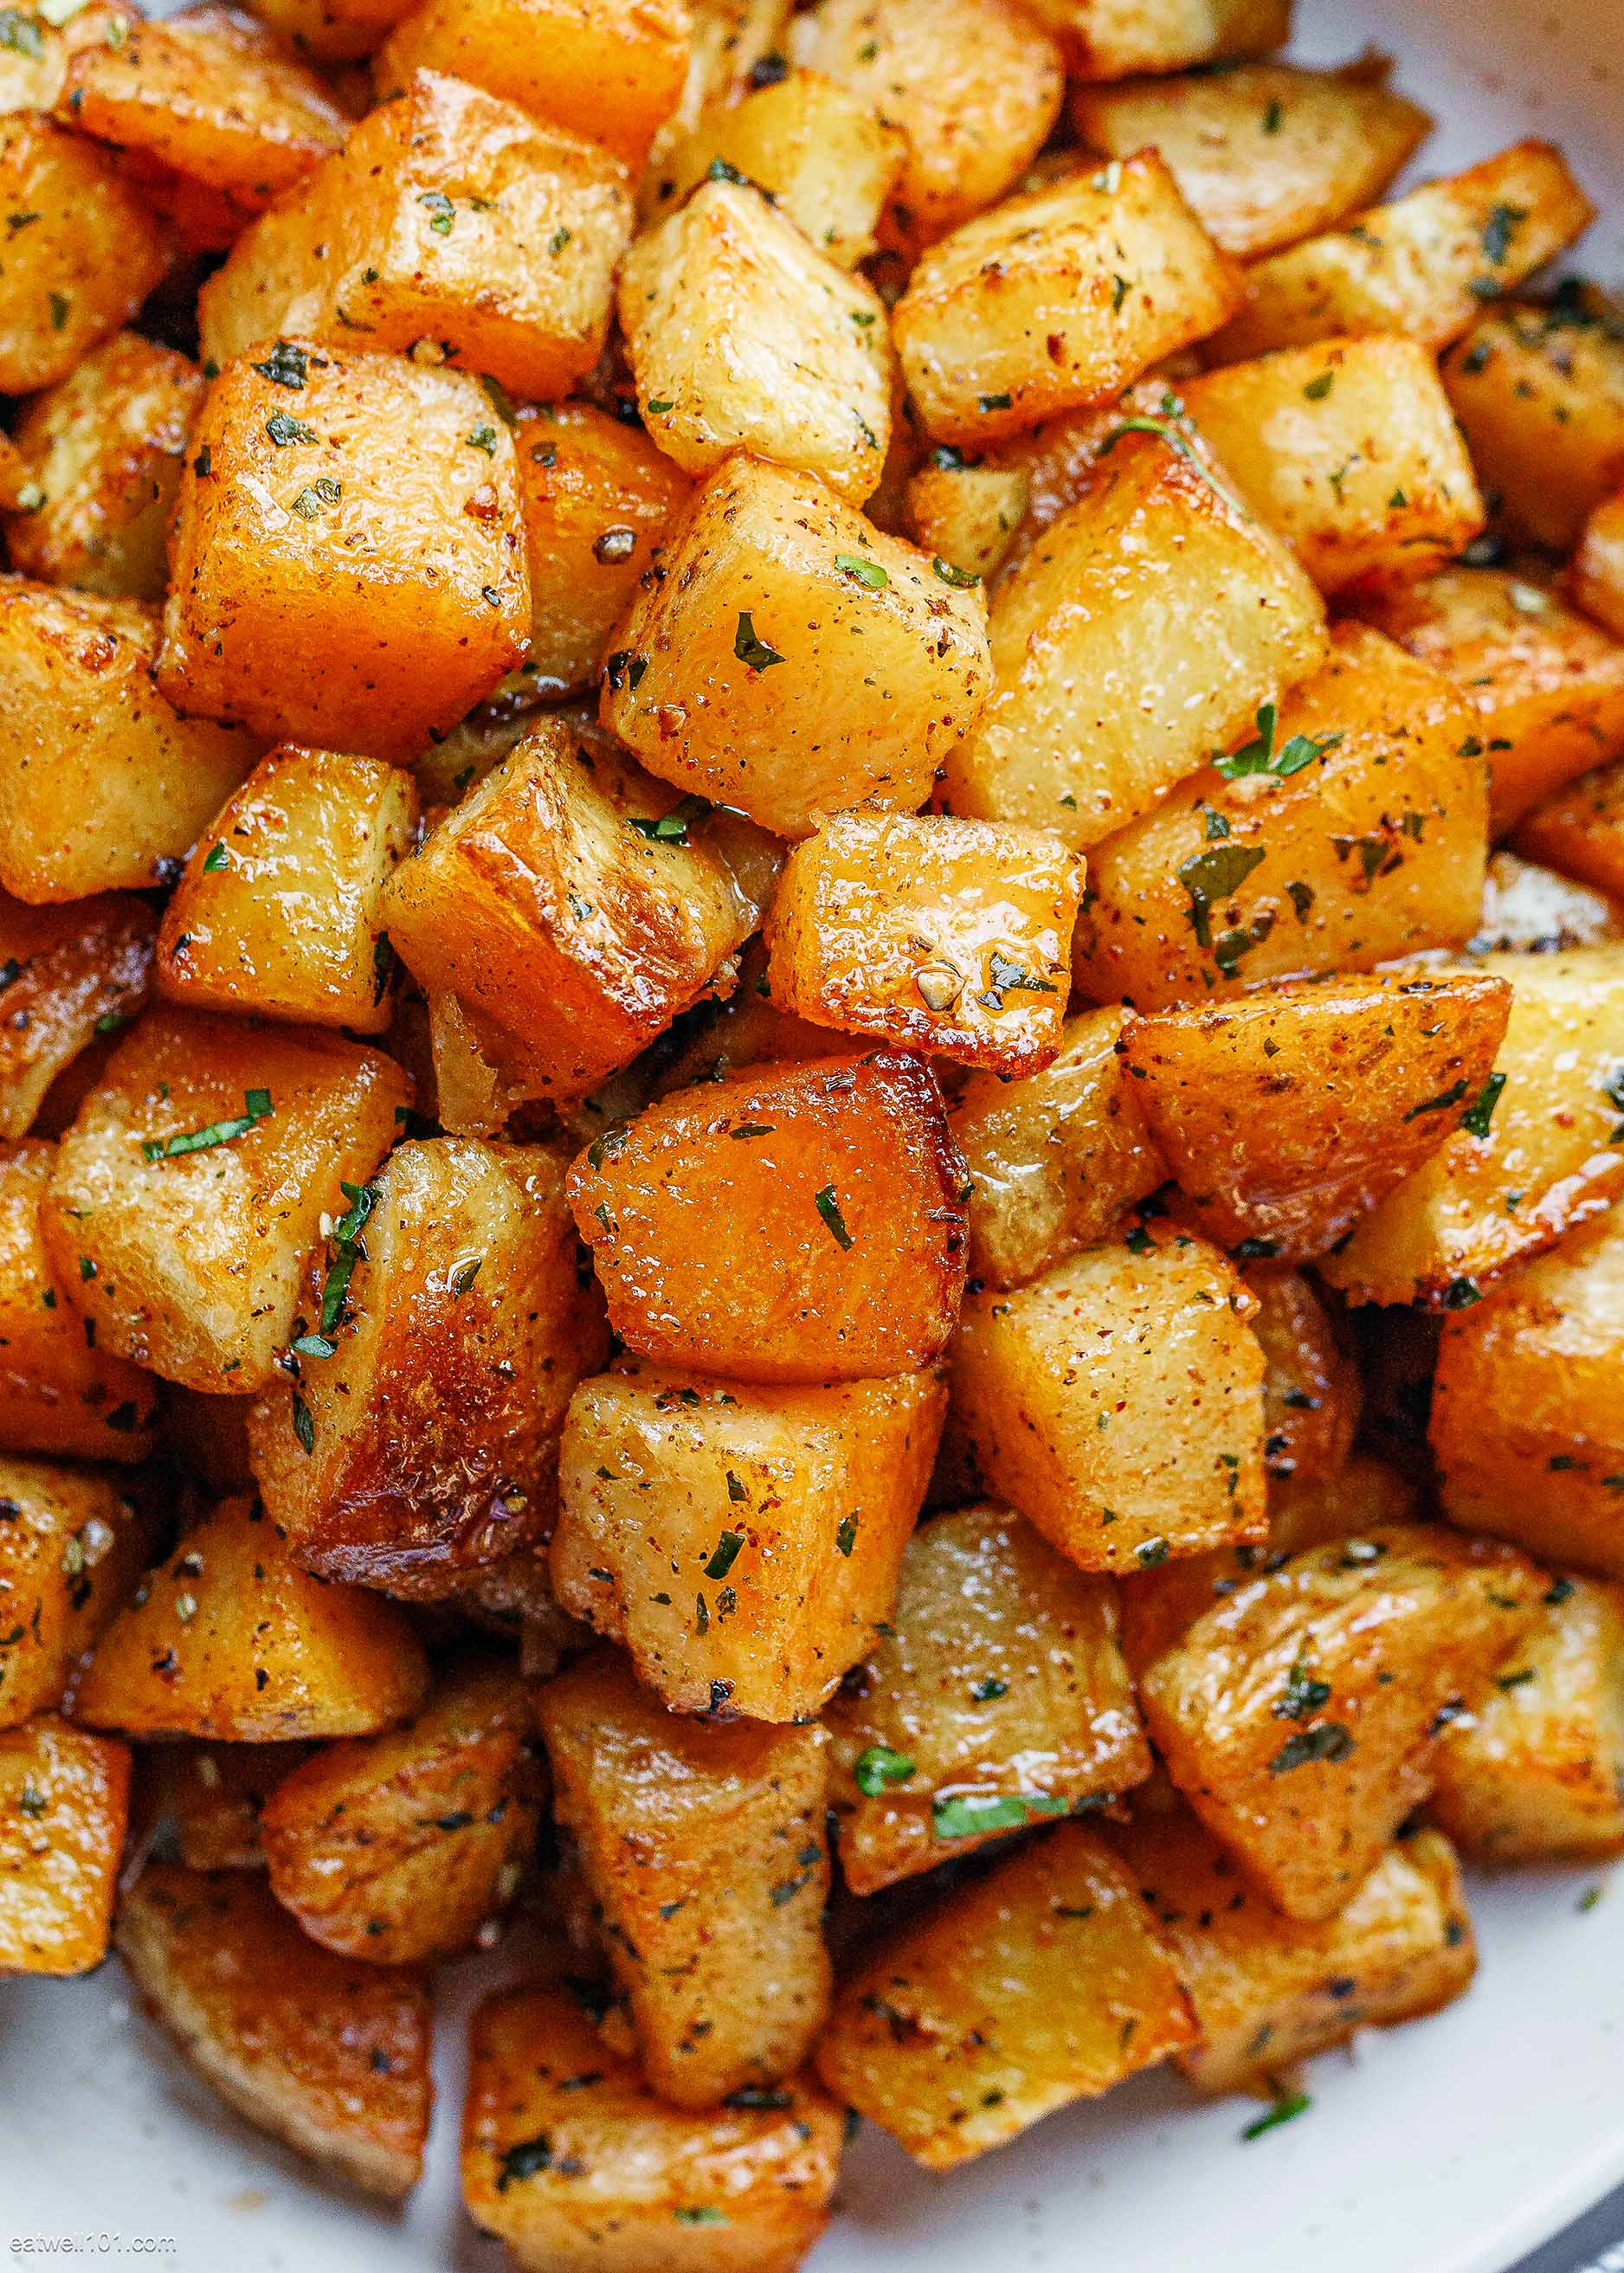 easy dinner recipes using potatoes | Easy Dinner Ideas